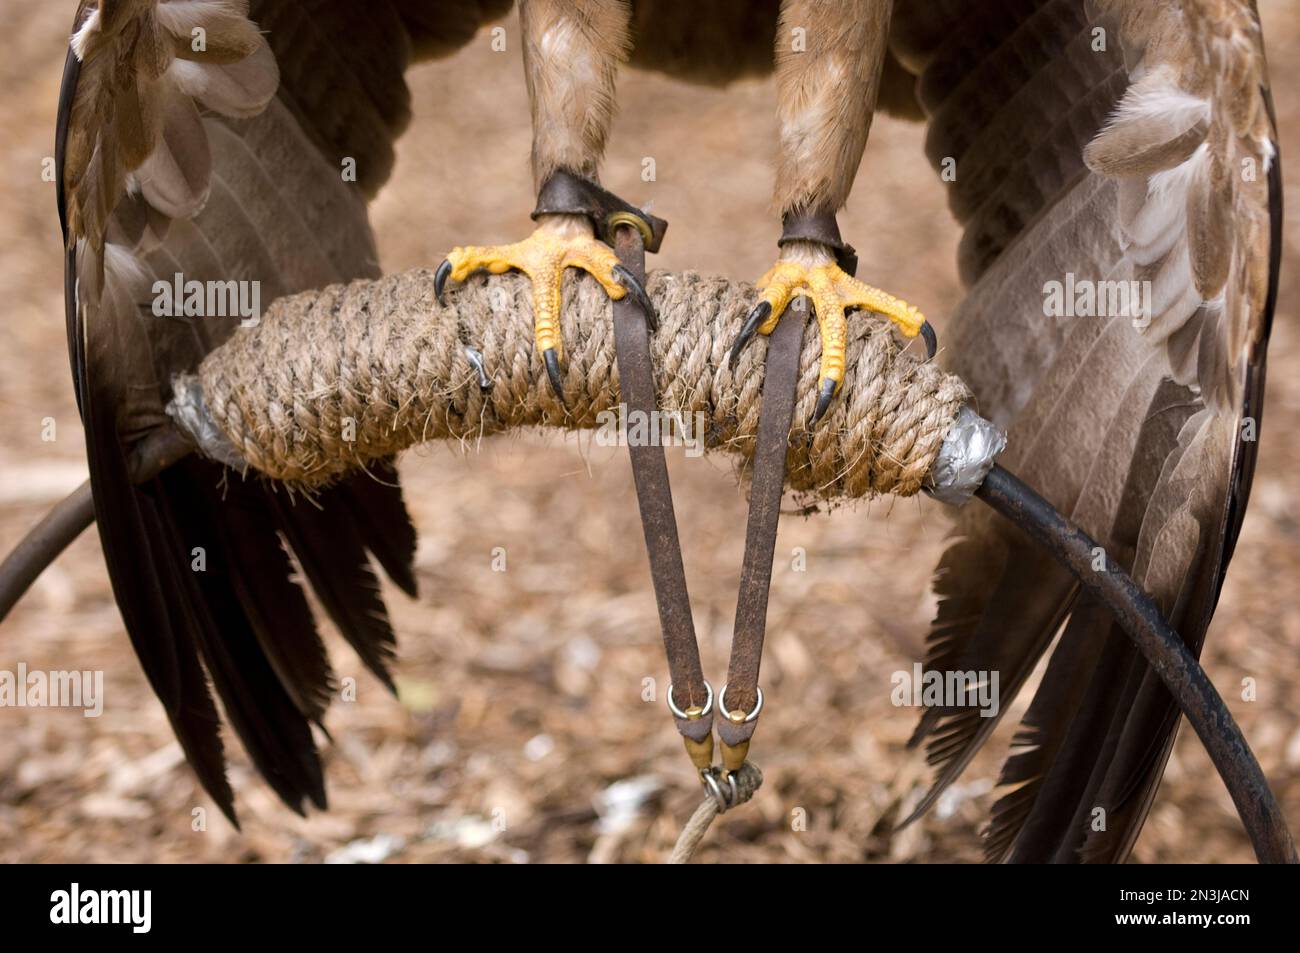 Krallen eines hoch oben stehenden Tawny Eagle (Aquila rapax) in einem Wildvogelschutzgebiet; Saint Louis, Missouri, Vereinigte Staaten von Amerika Stockfoto